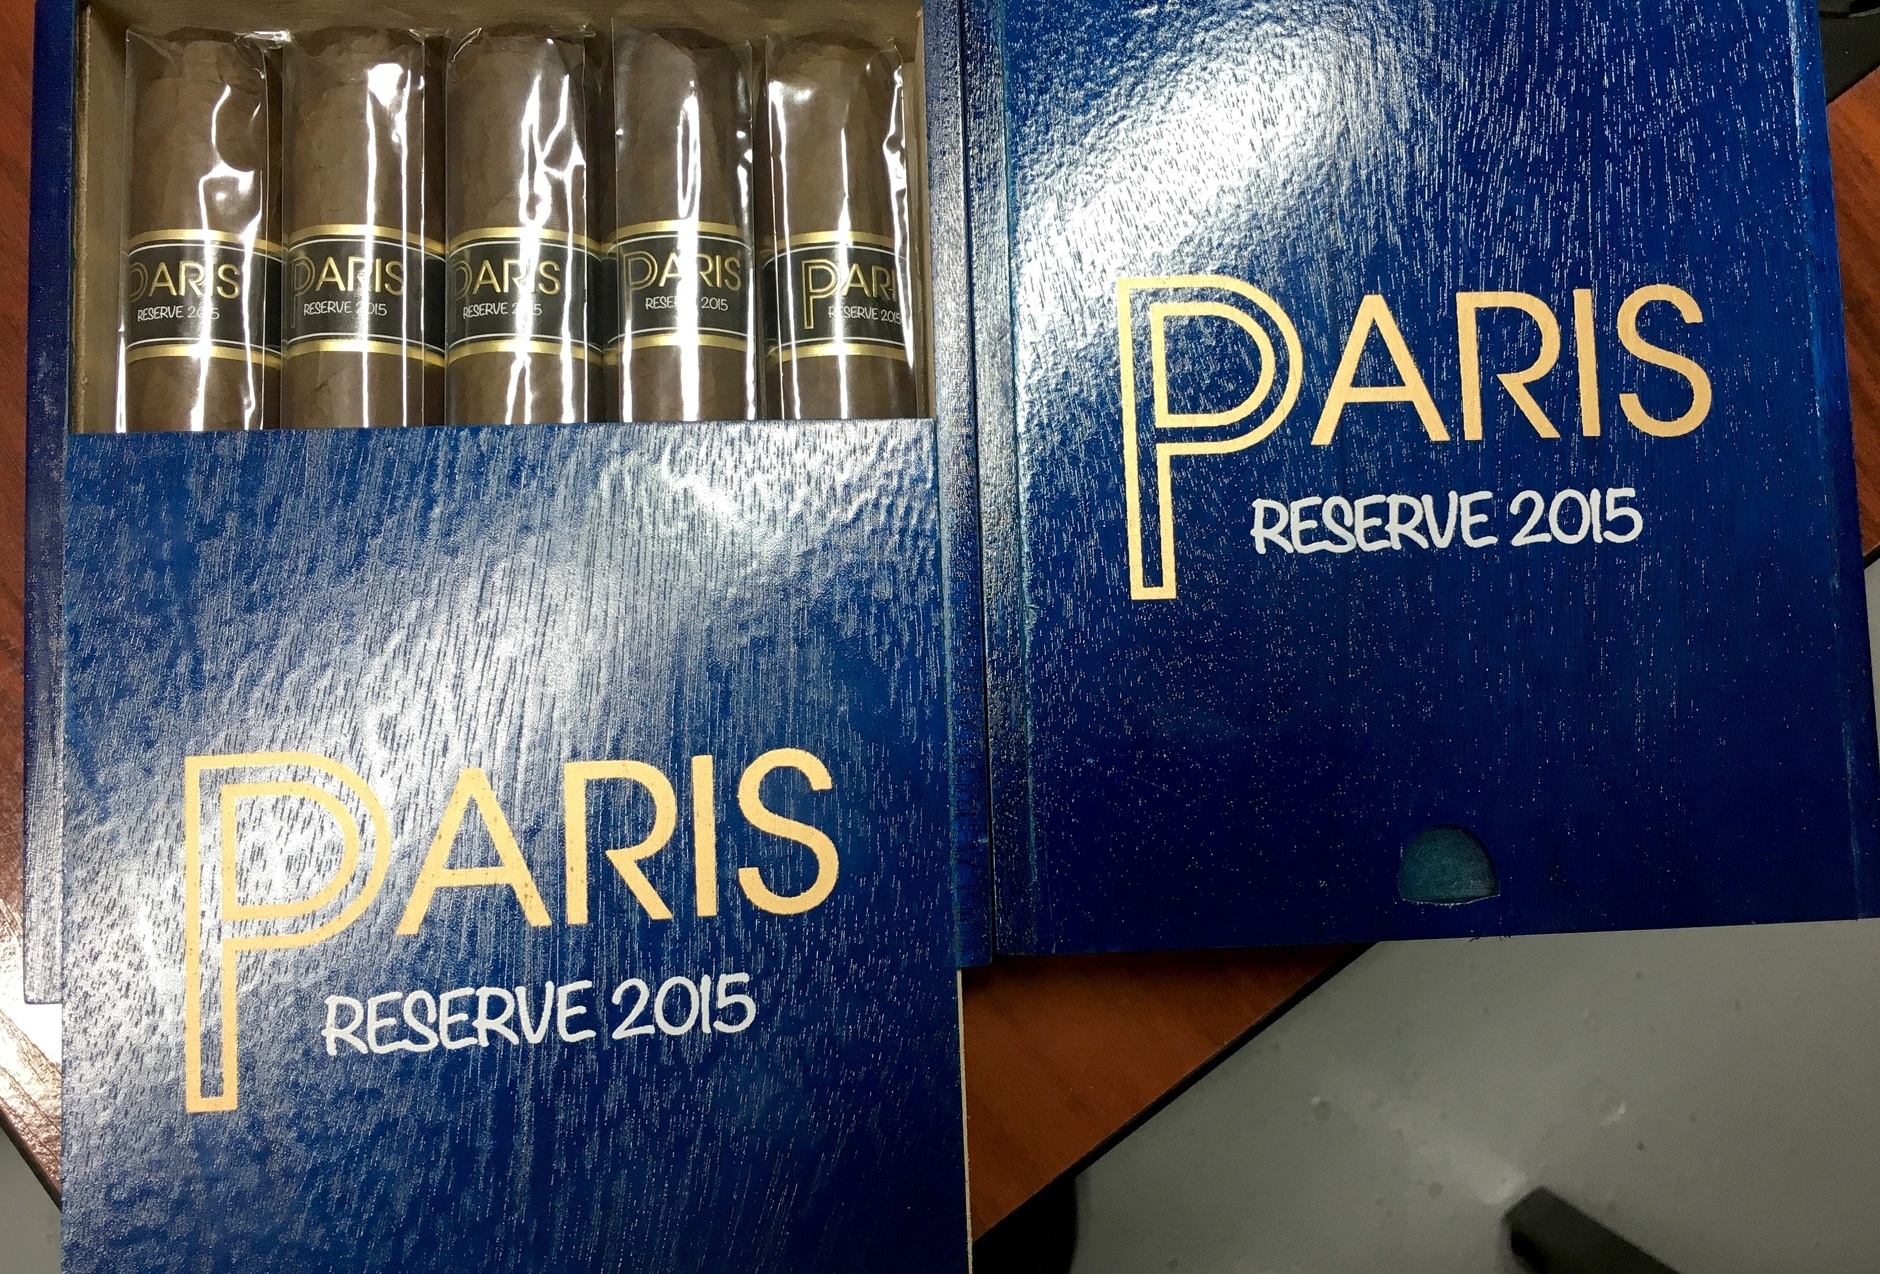 Paris Reserve 2015 Feature